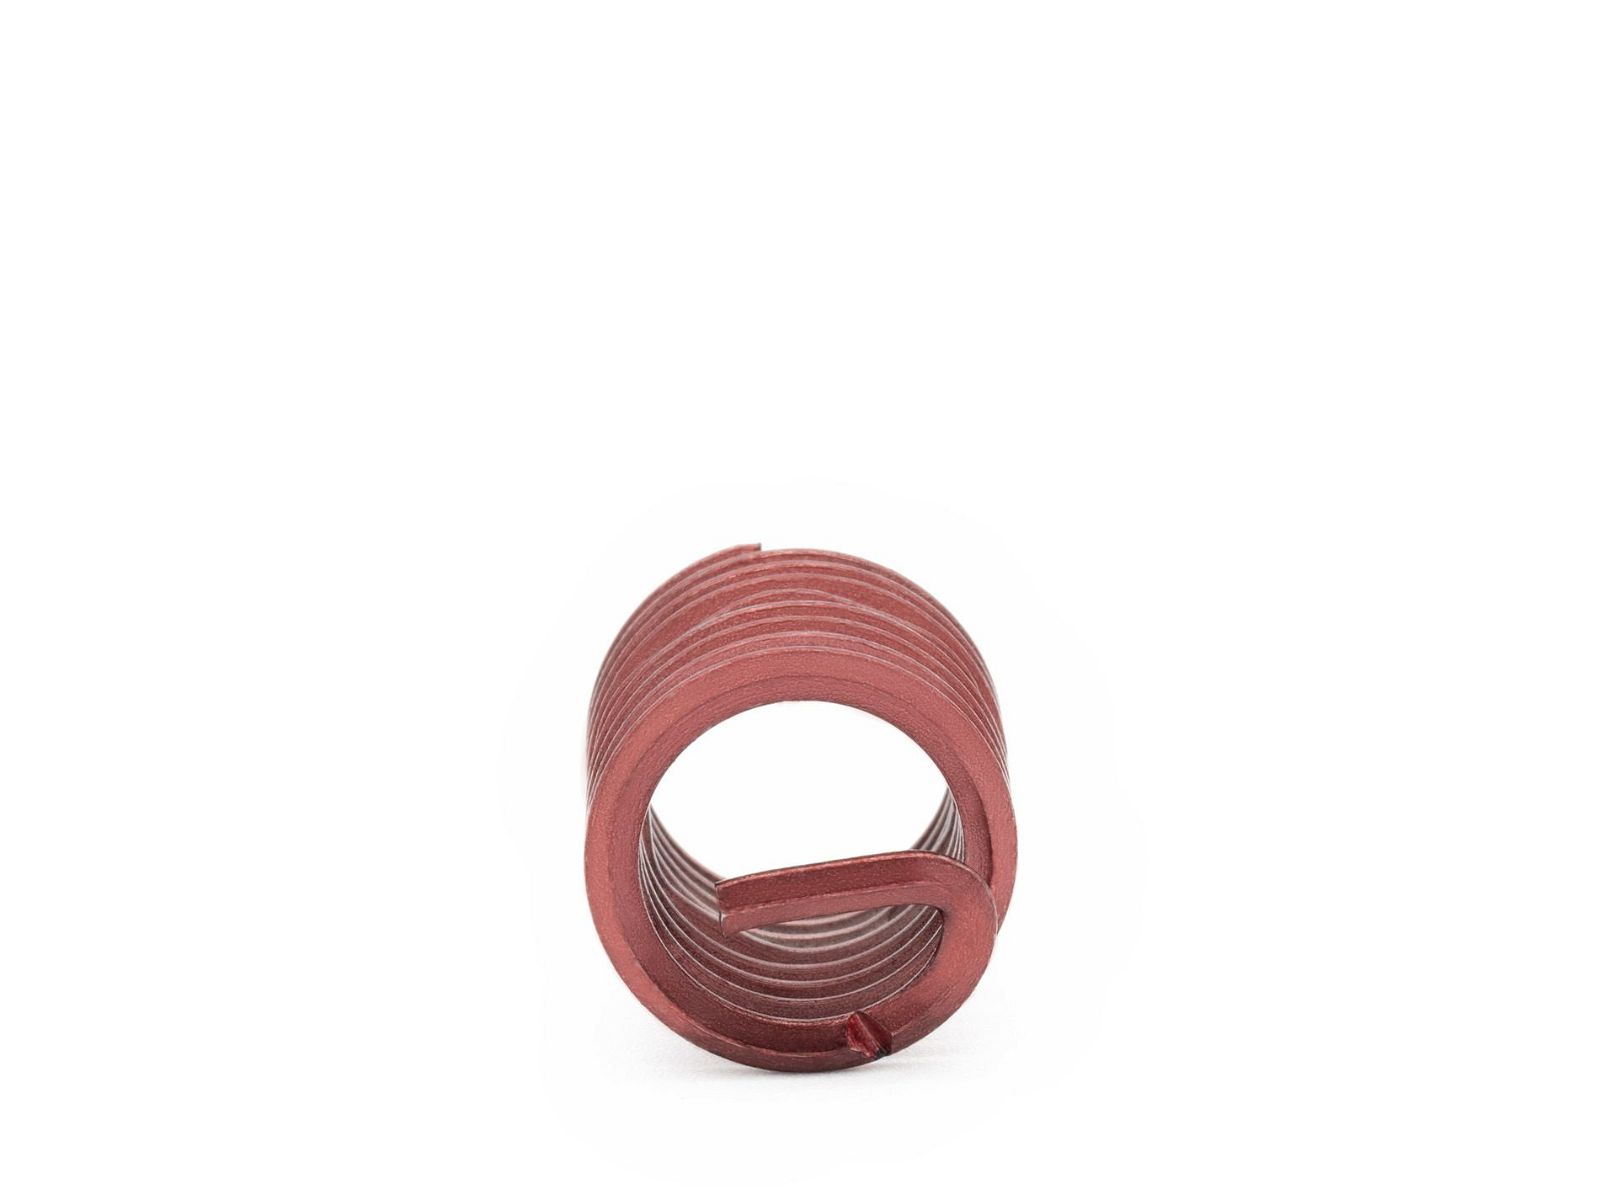 BaerCoil Wire Thread Inserts BSF 3/8 x 20 - 1.5 D (14.29 mm) - screw grip (screw locking) - 100 pcs.